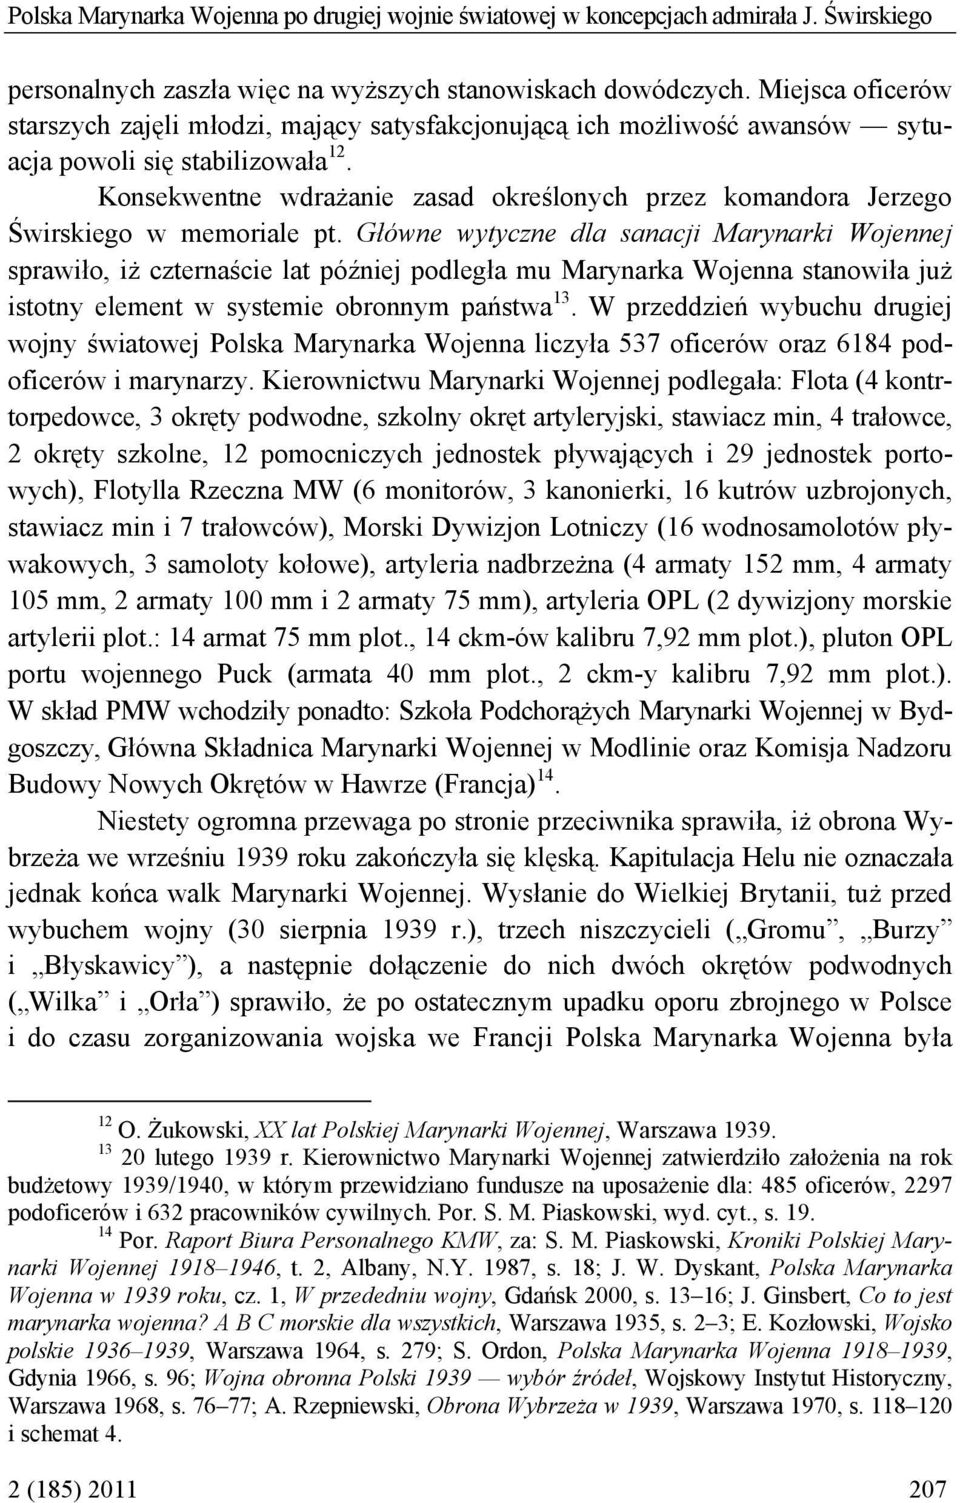 Konsekwentne wdrażanie zasad określonych przez komandora Jerzego Świrskiego w memoriale pt.